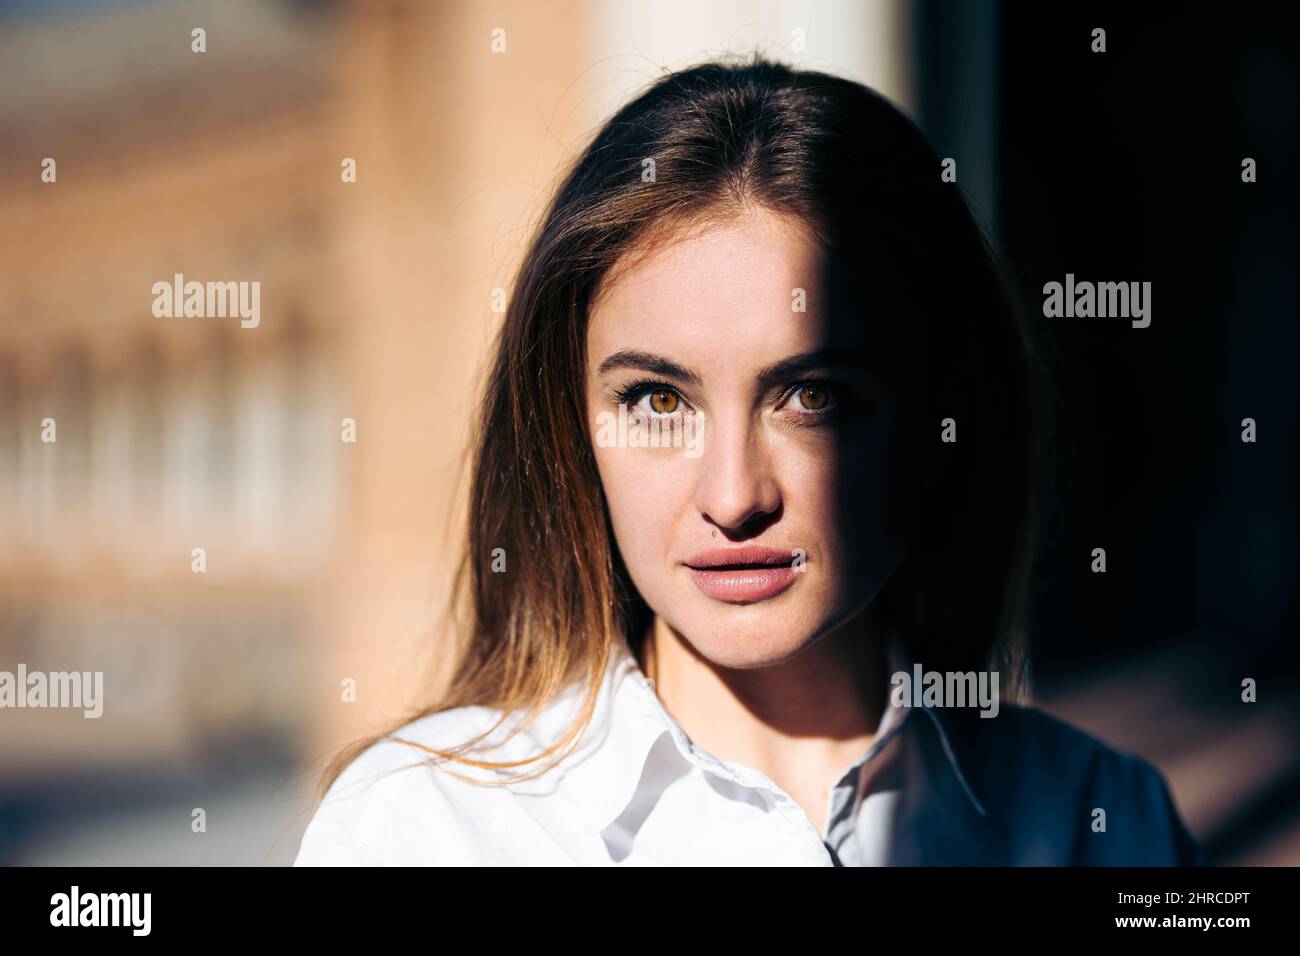 Gros plan de la jeune femme caucasienne avec un regard intense entre le soleil et l'ombre Banque D'Images